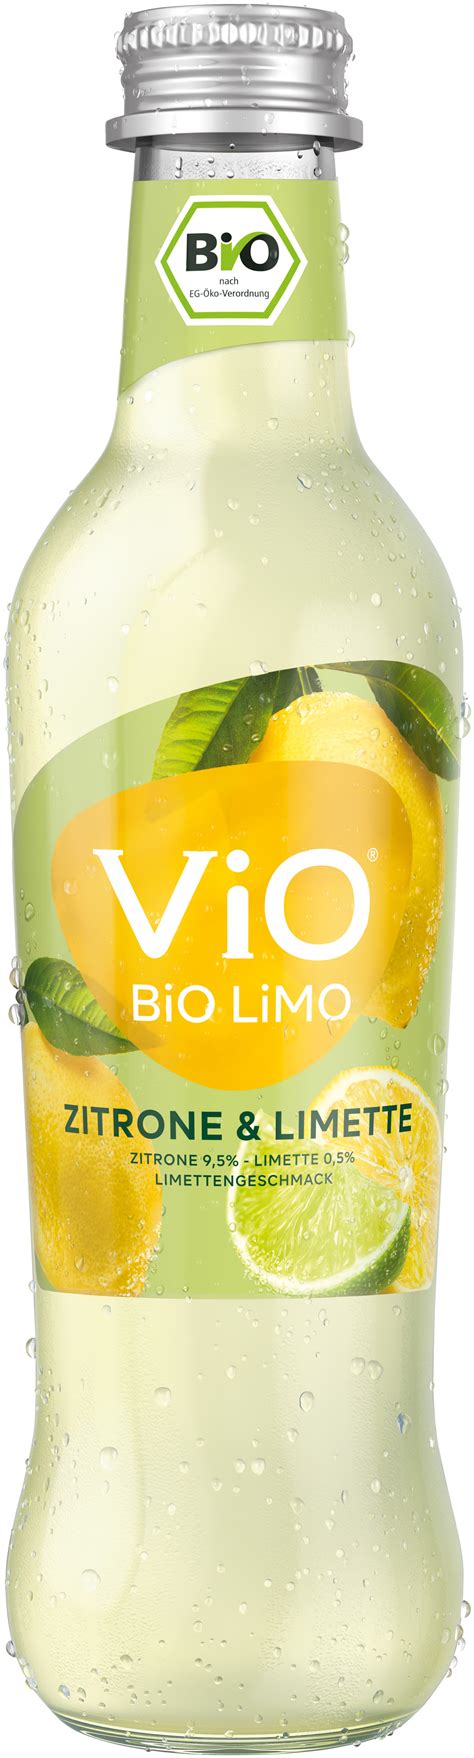 Vio Bio Limo Zitrone Limette 03 L Glas Mehrweg Ihr Zuverlässiger